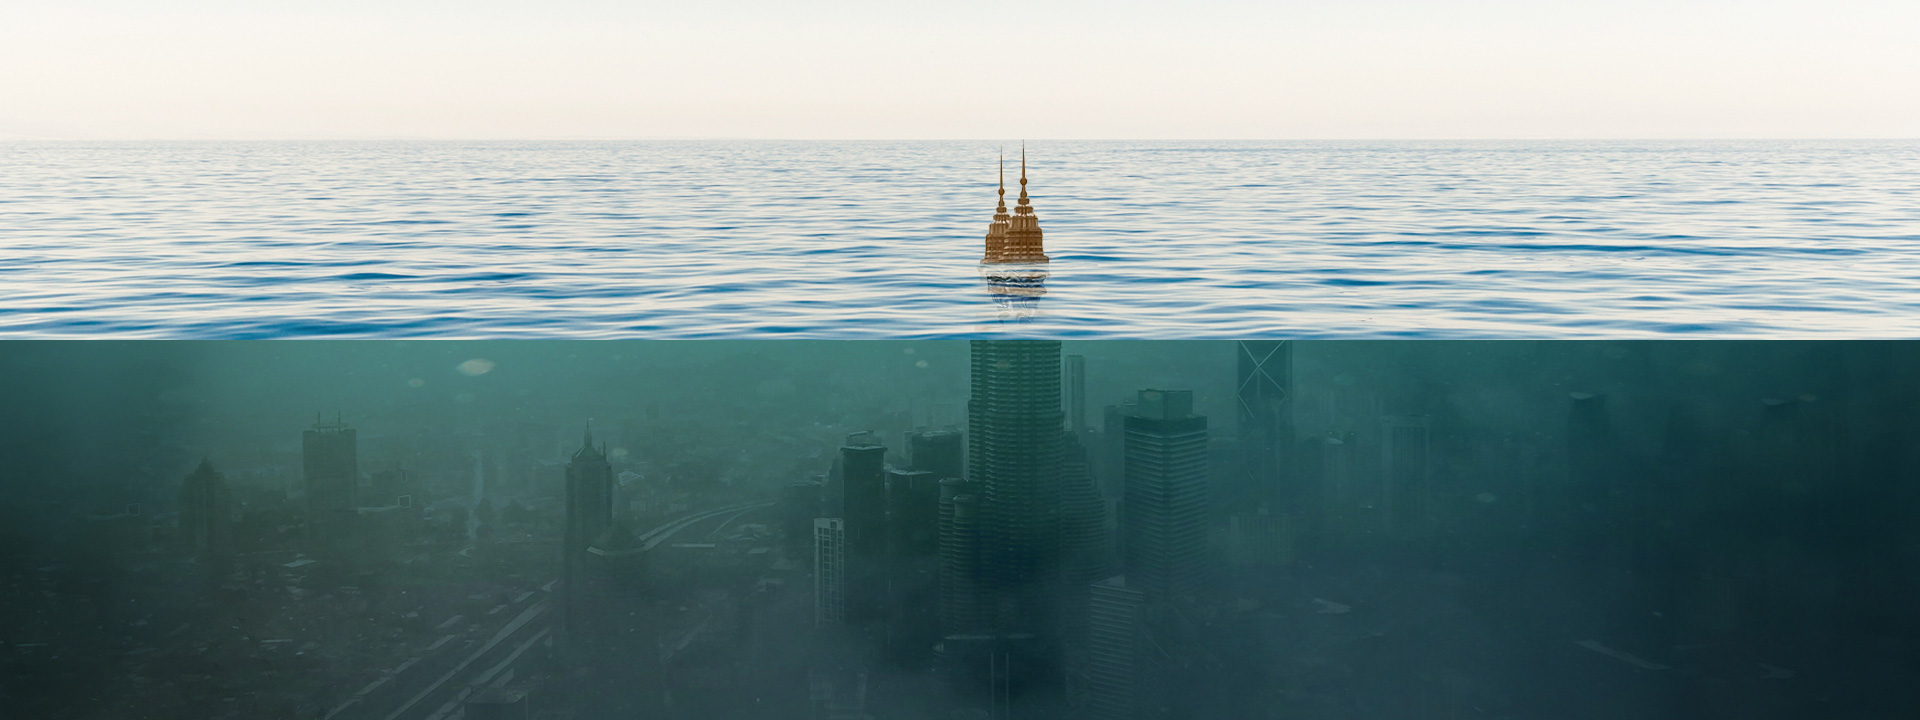 El mar nos desplaza ¿Una metáfora de nuestro fracaso?